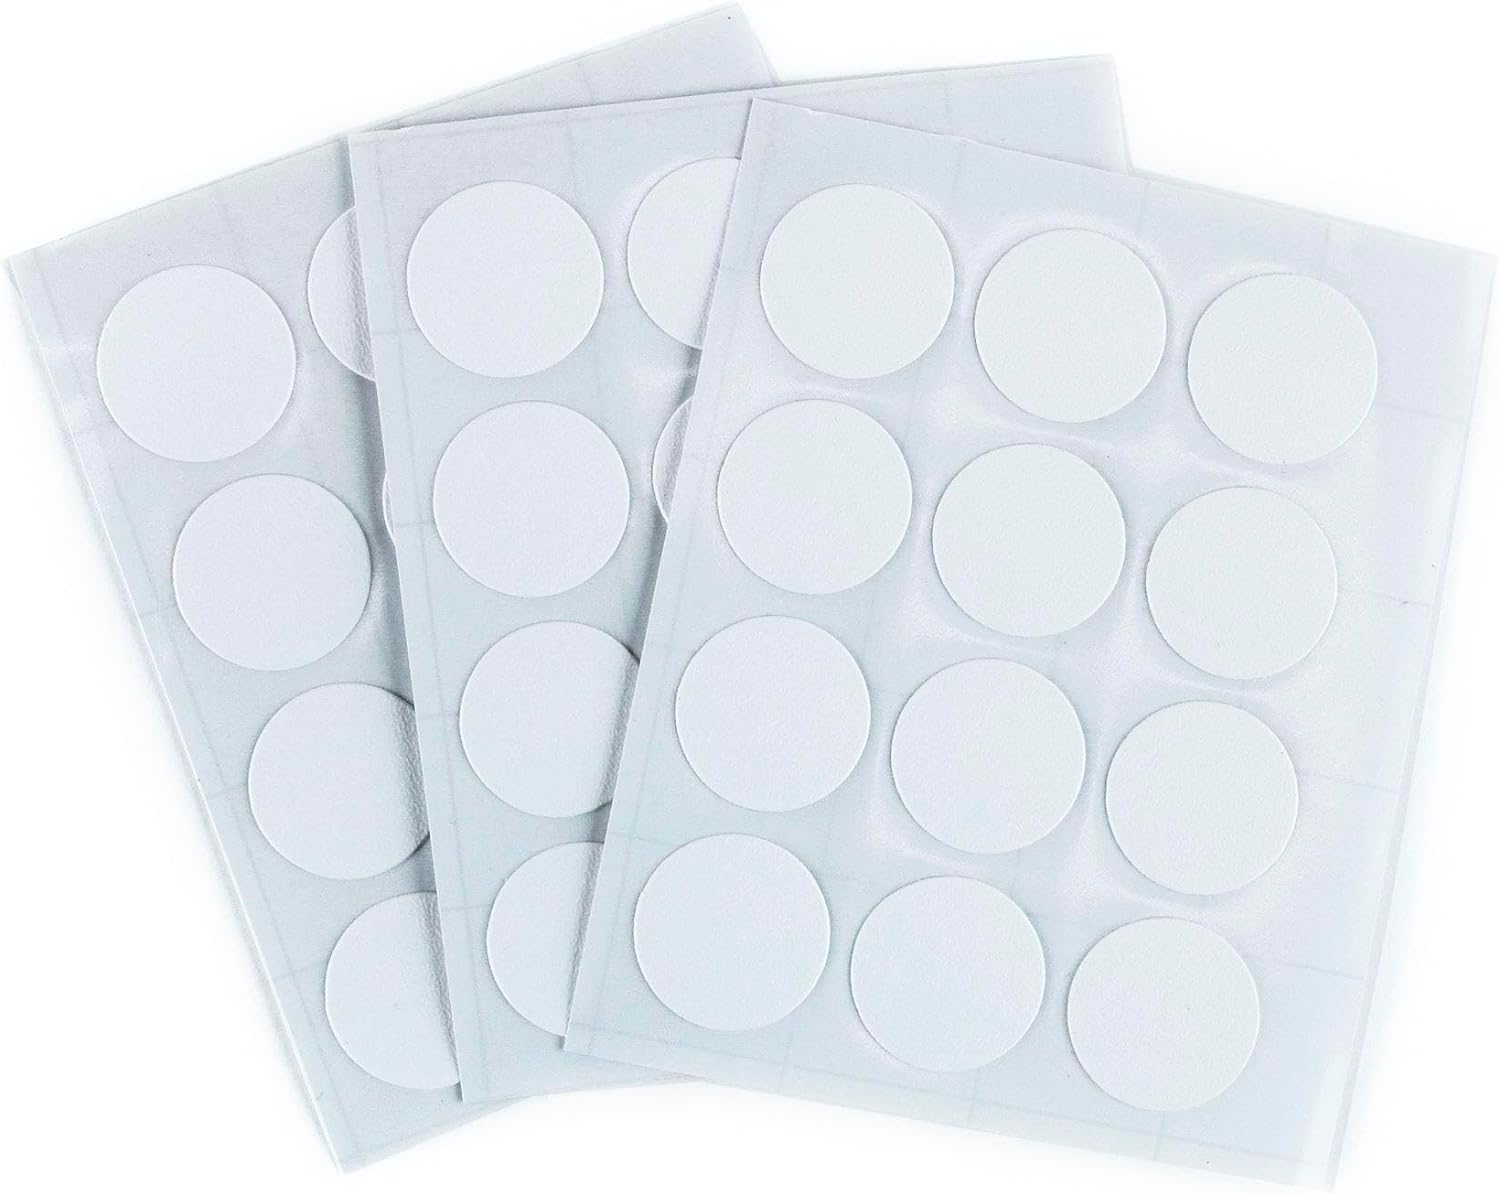 Furndiy Self-Adhesive Screw Cover Caps (White)